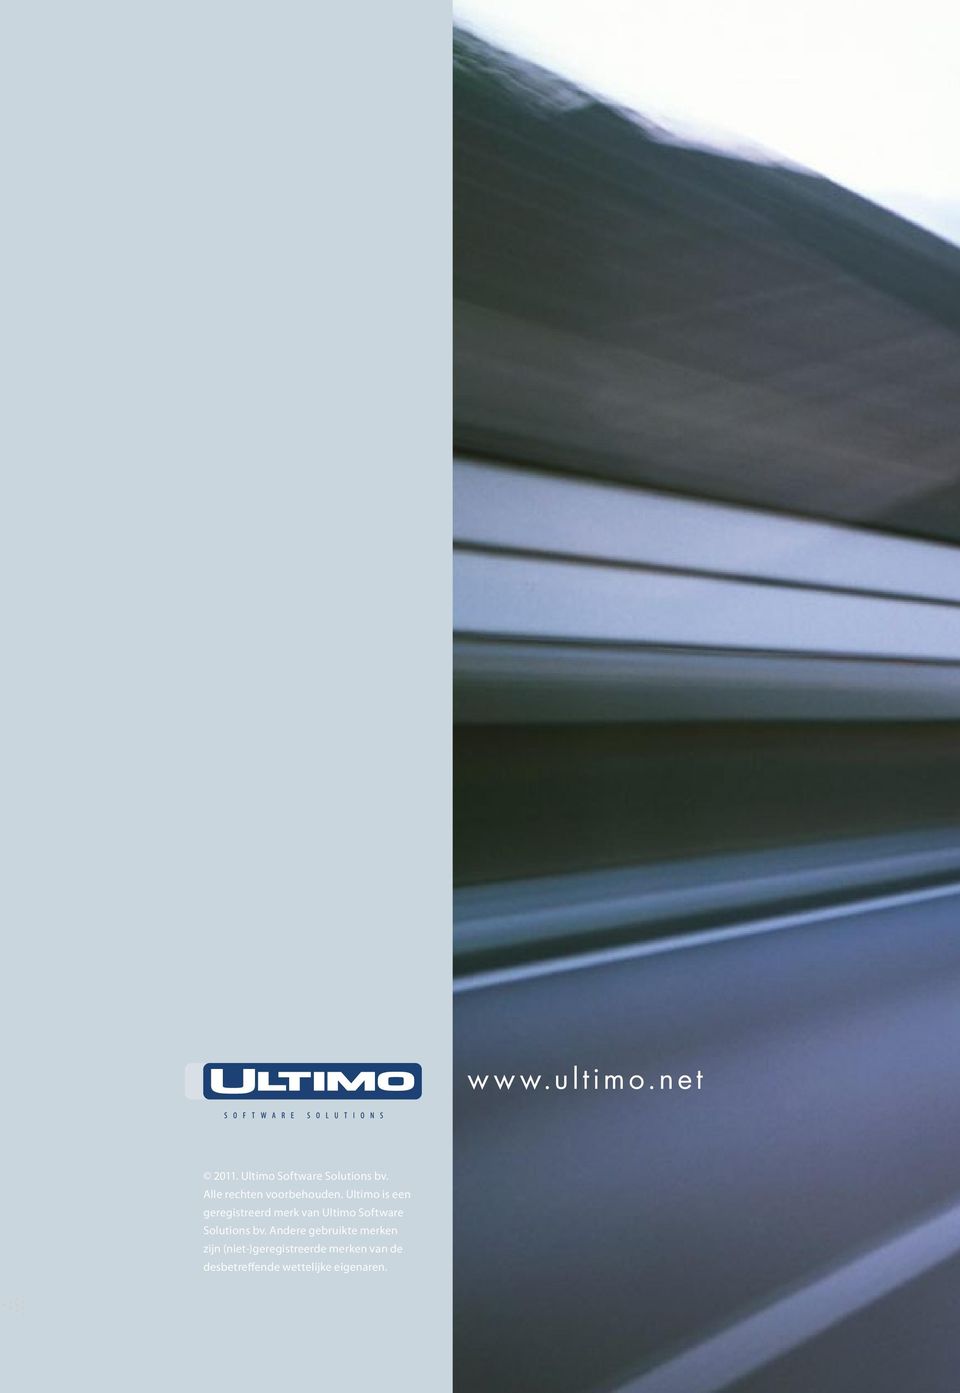 Ultimo is een geregistreerd merk van Ultimo Software Solutions